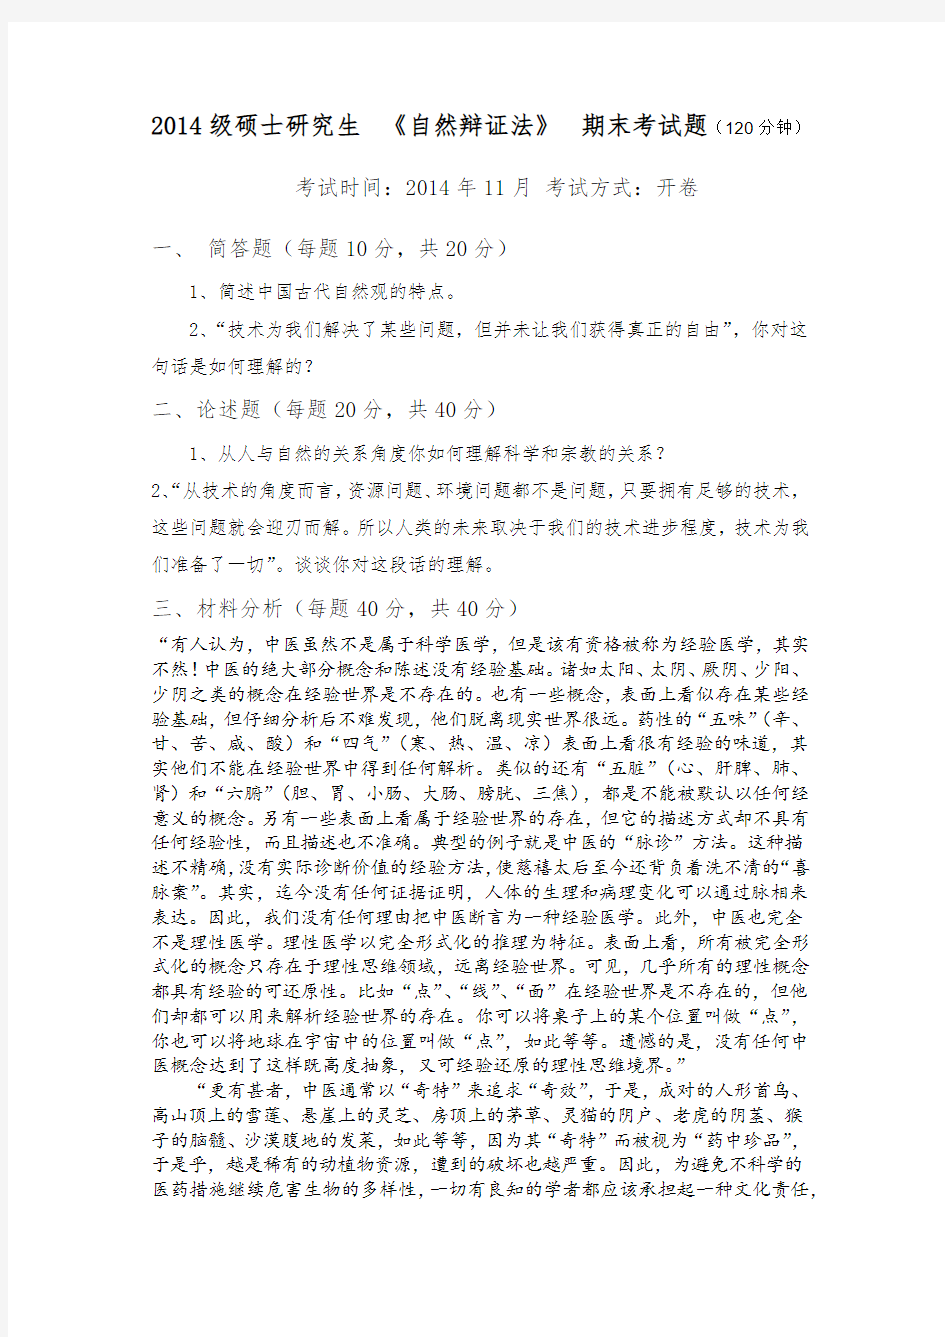 重庆交通大学2014级自然辩证法期末考试题